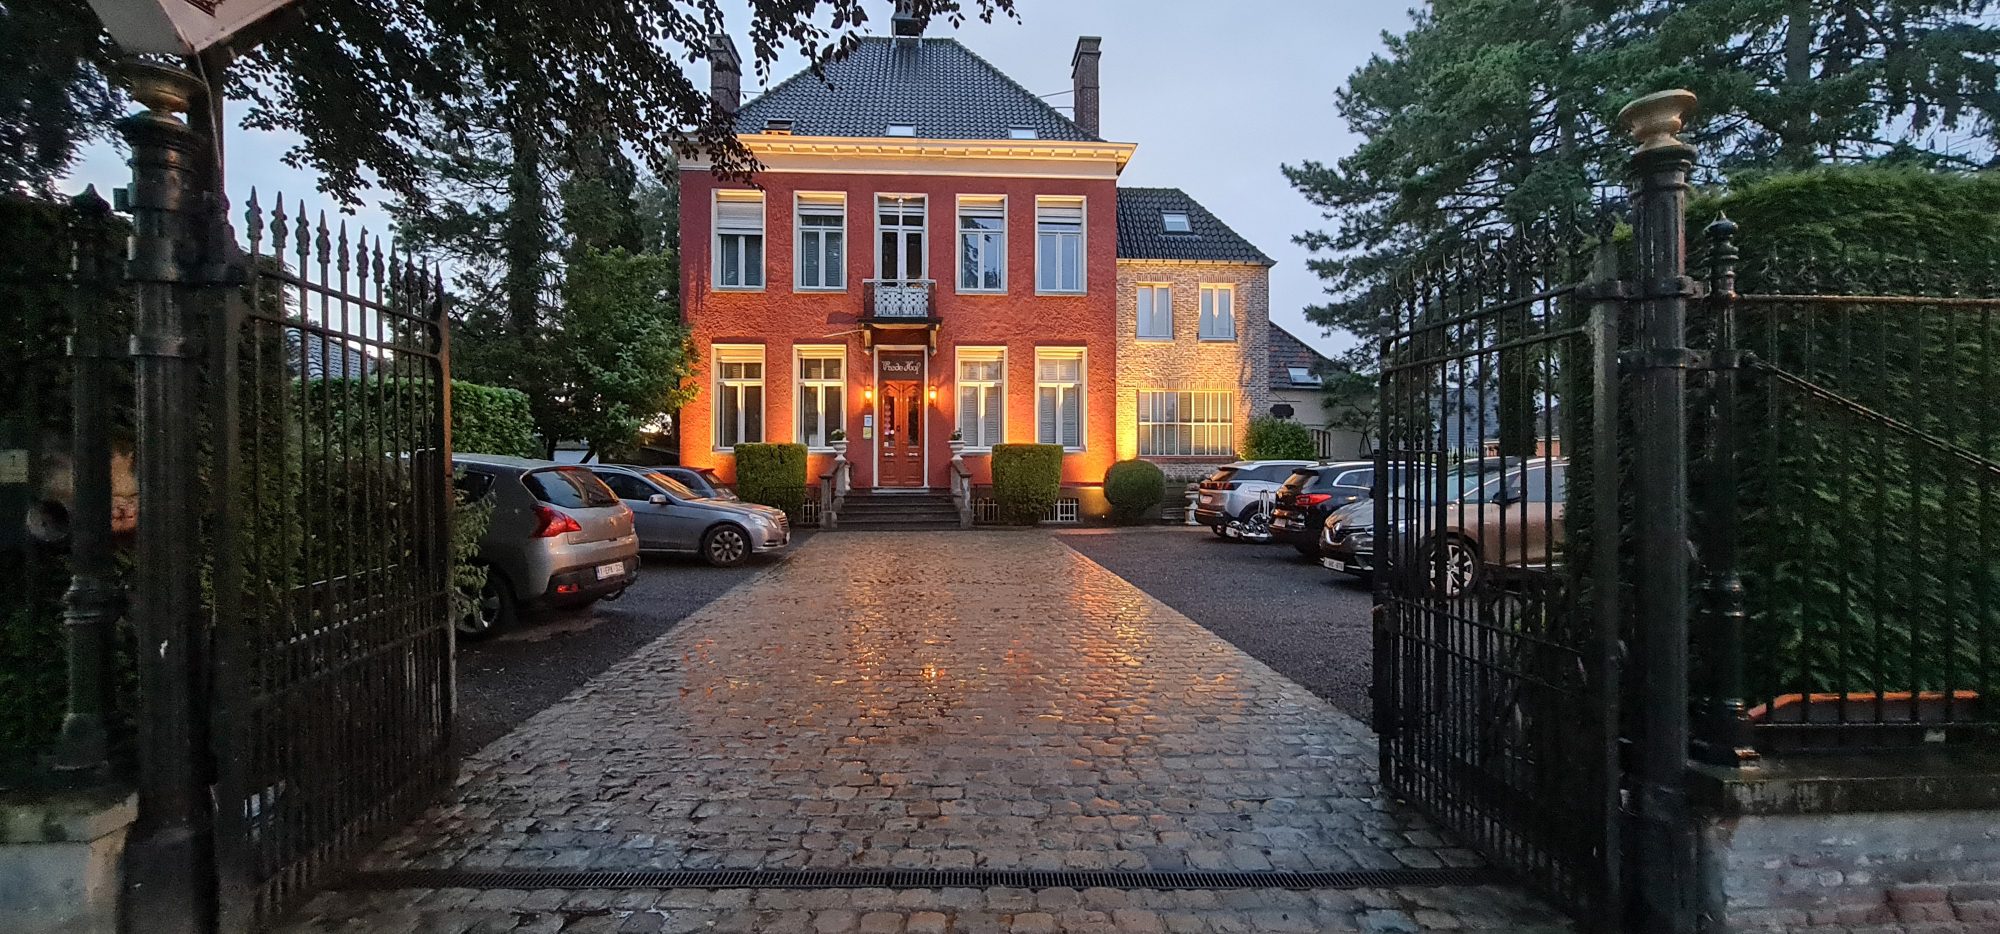 Verkocht: Charme BenB Hotel in de regio Brugge met 14 kamers Restaurant, Terras en koffiecorner en apart woonhuis